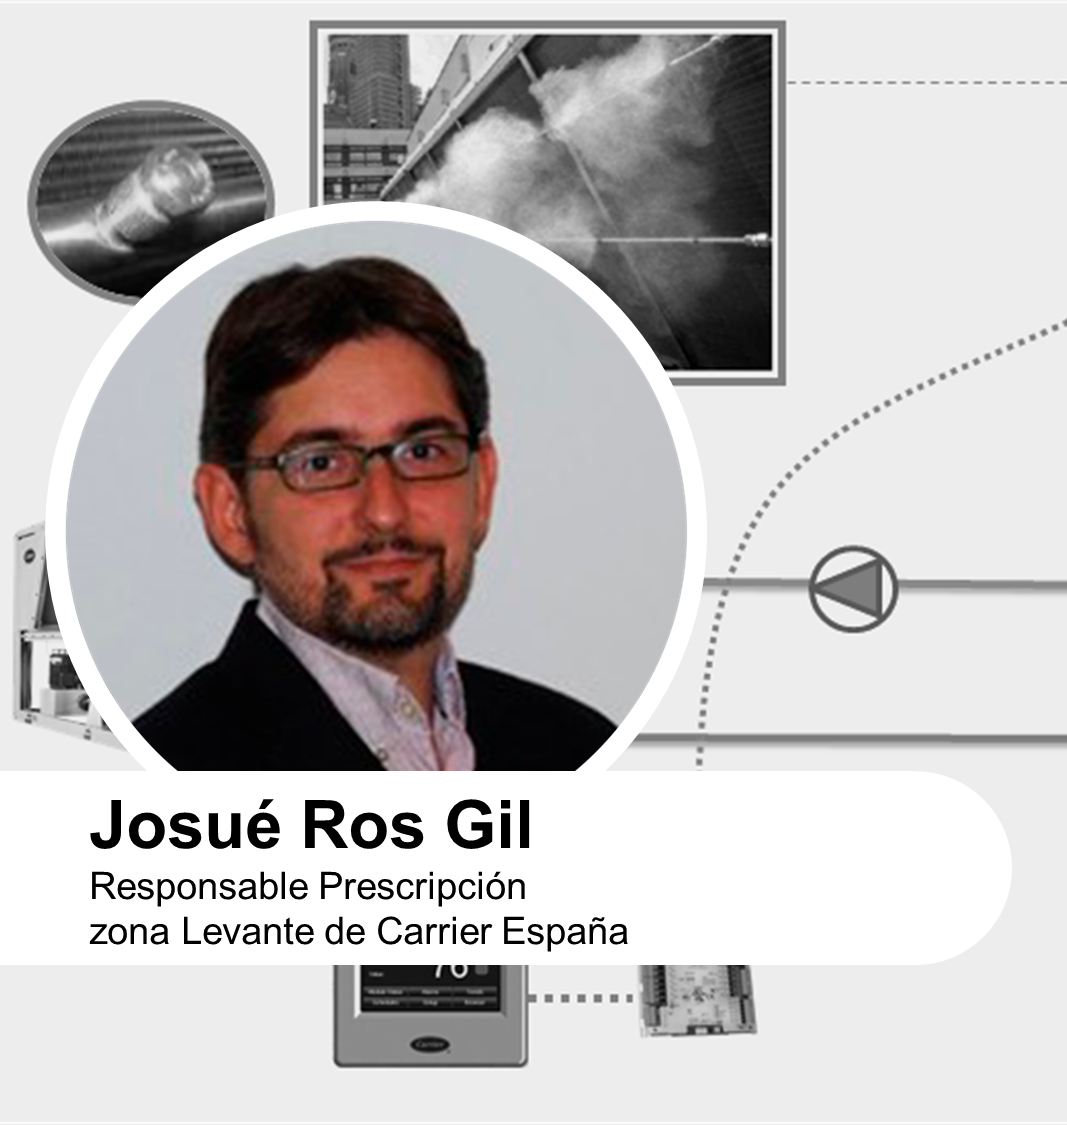 Mejora de la eficiencia energética en instalaciones mediante el empleo de aerorefrigeradores por Josué Ros Gil